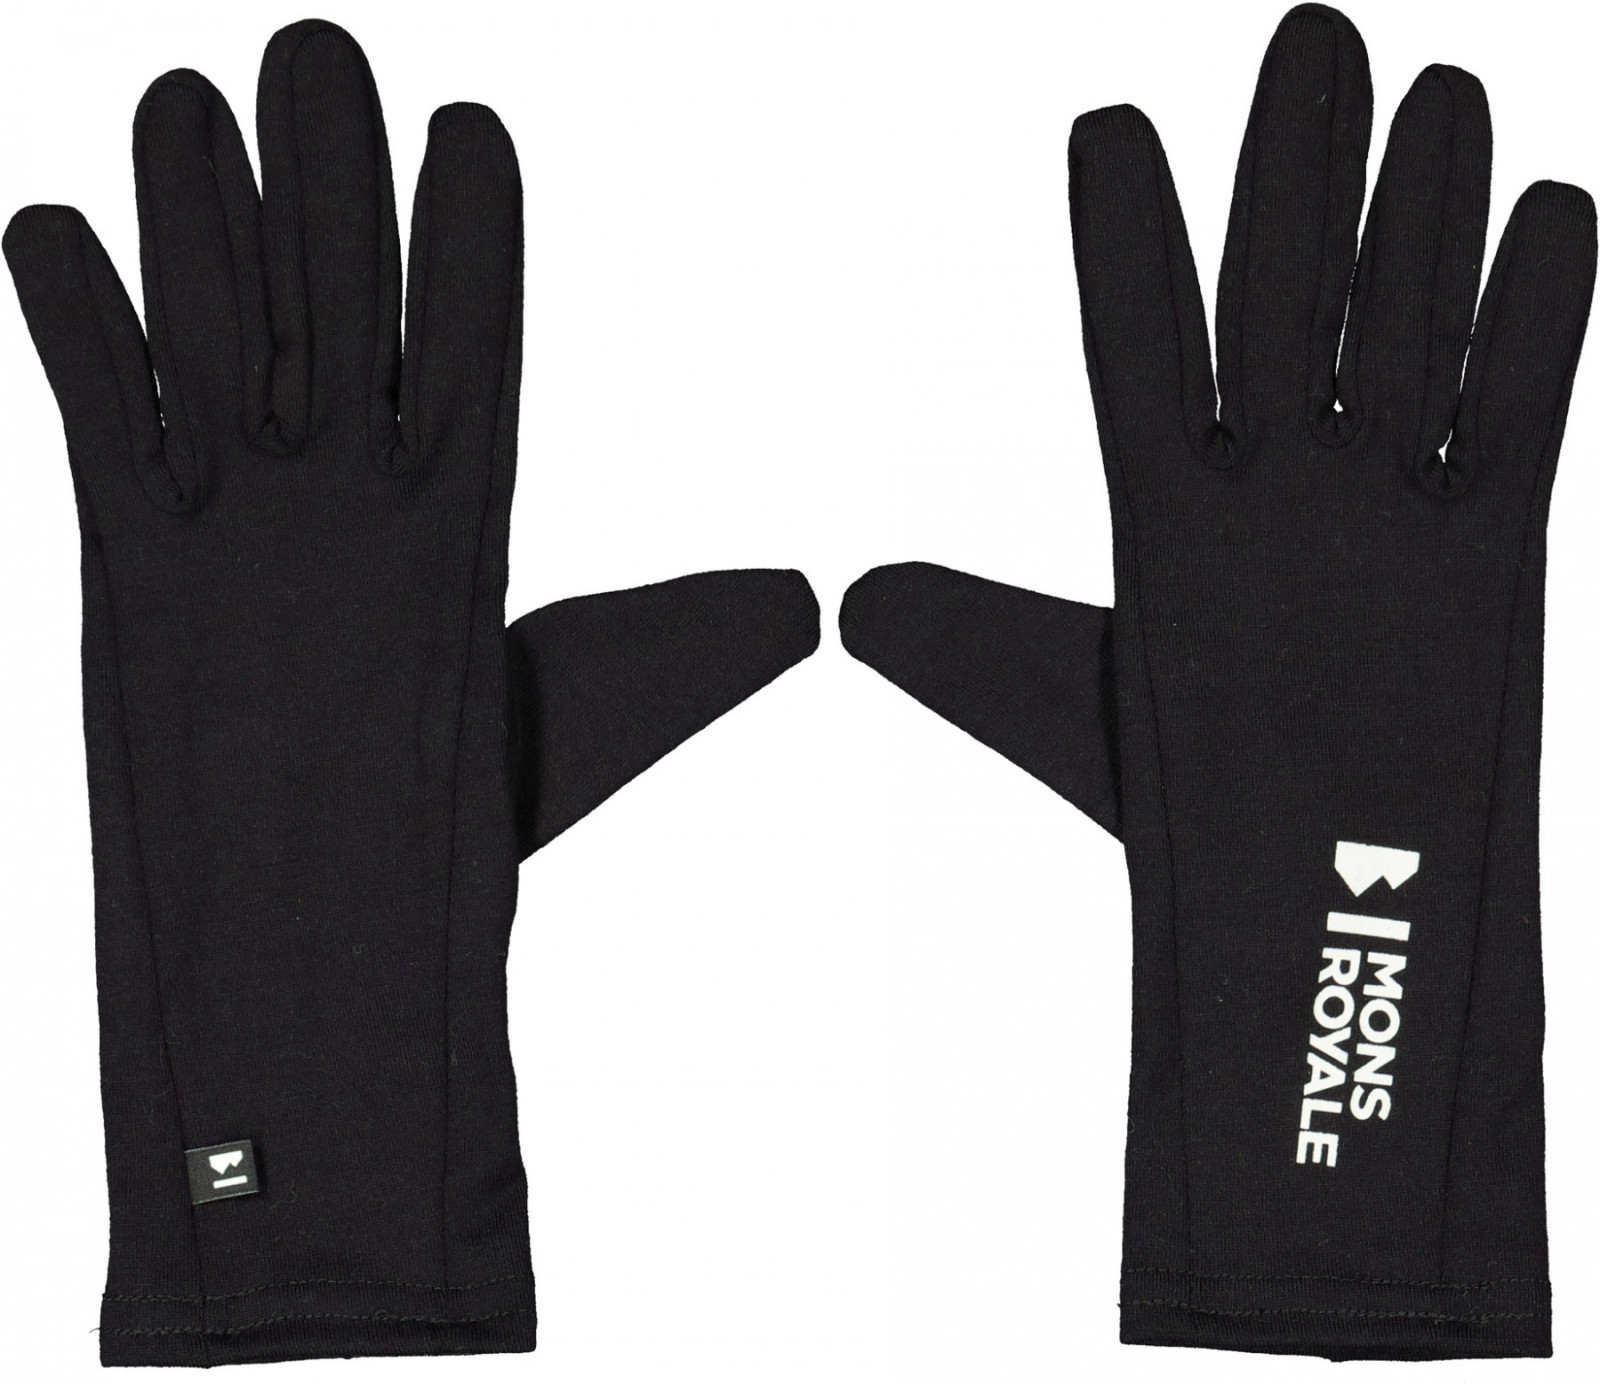 Mons Royale Volta Glove Liner - black